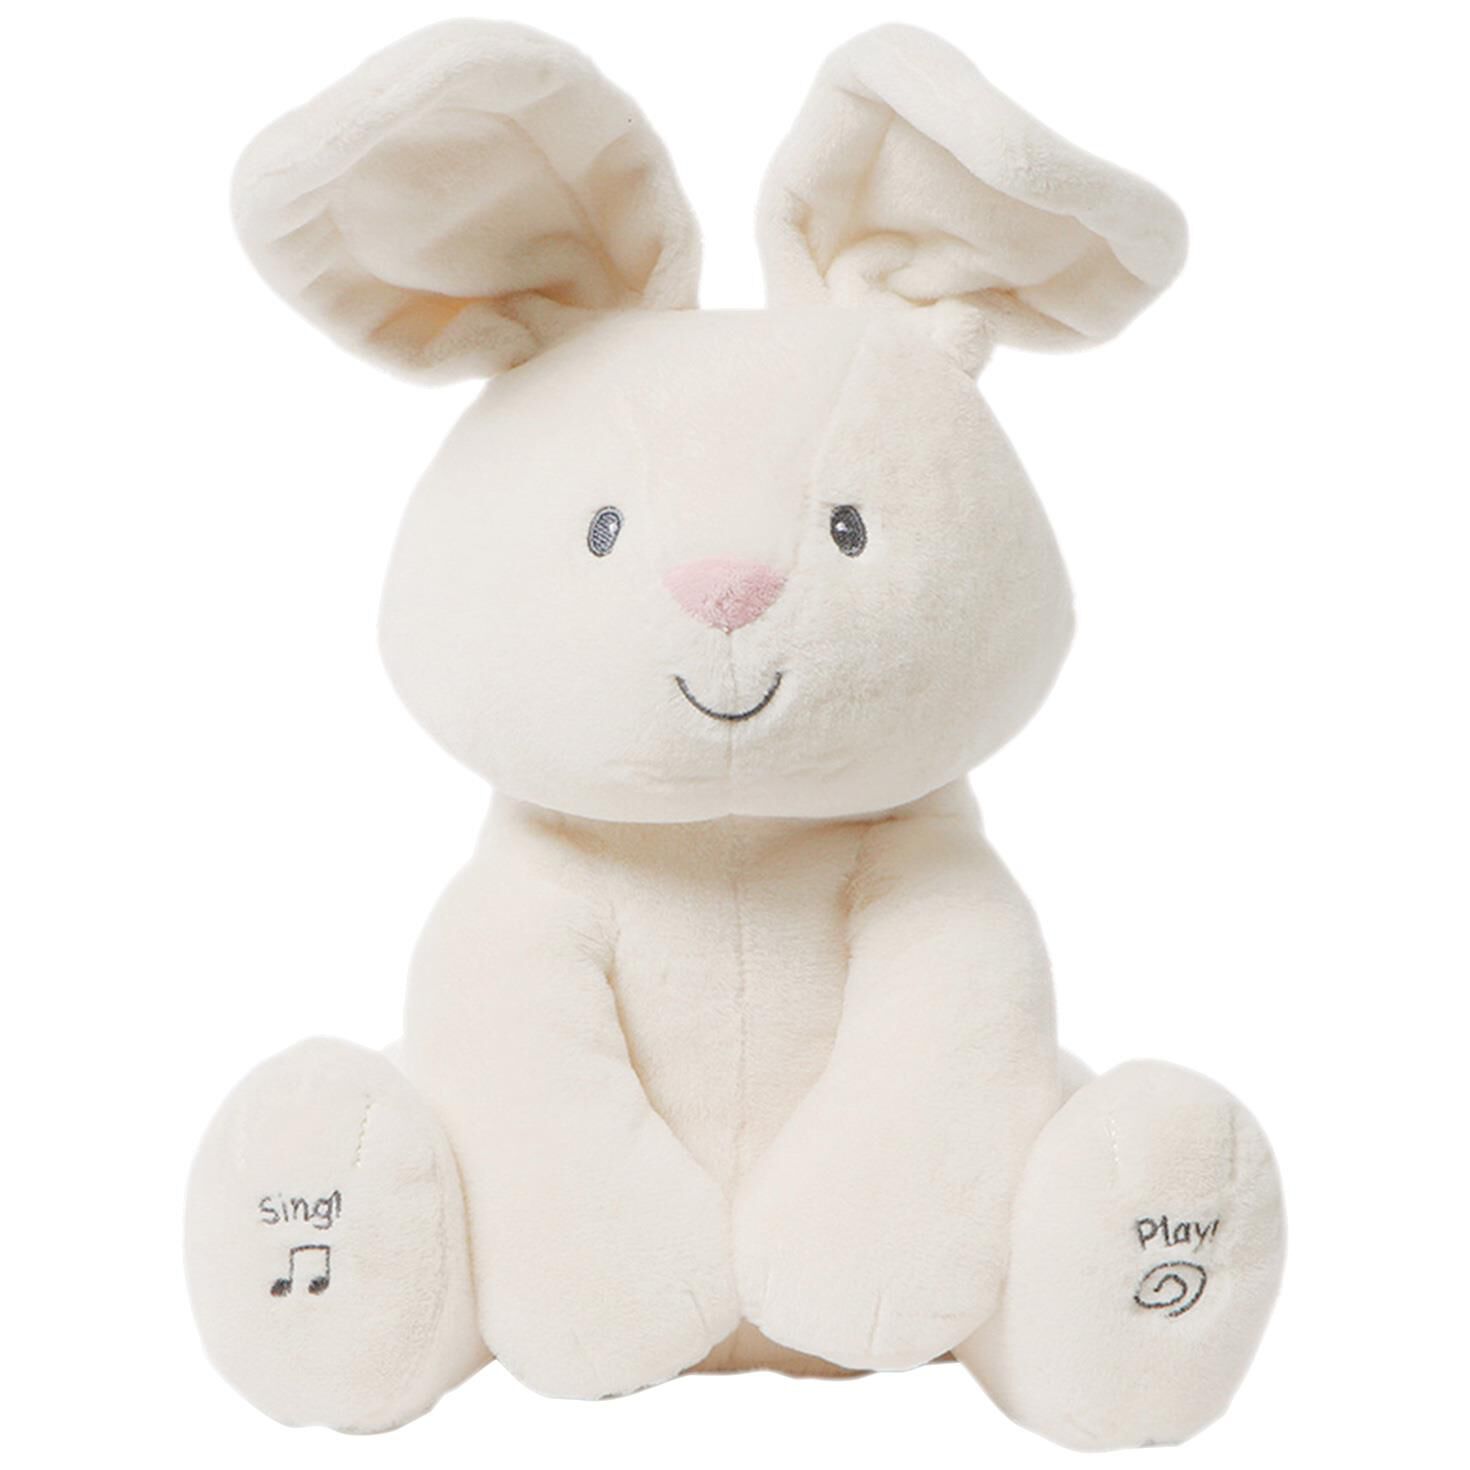 musical bunny stuffed animal